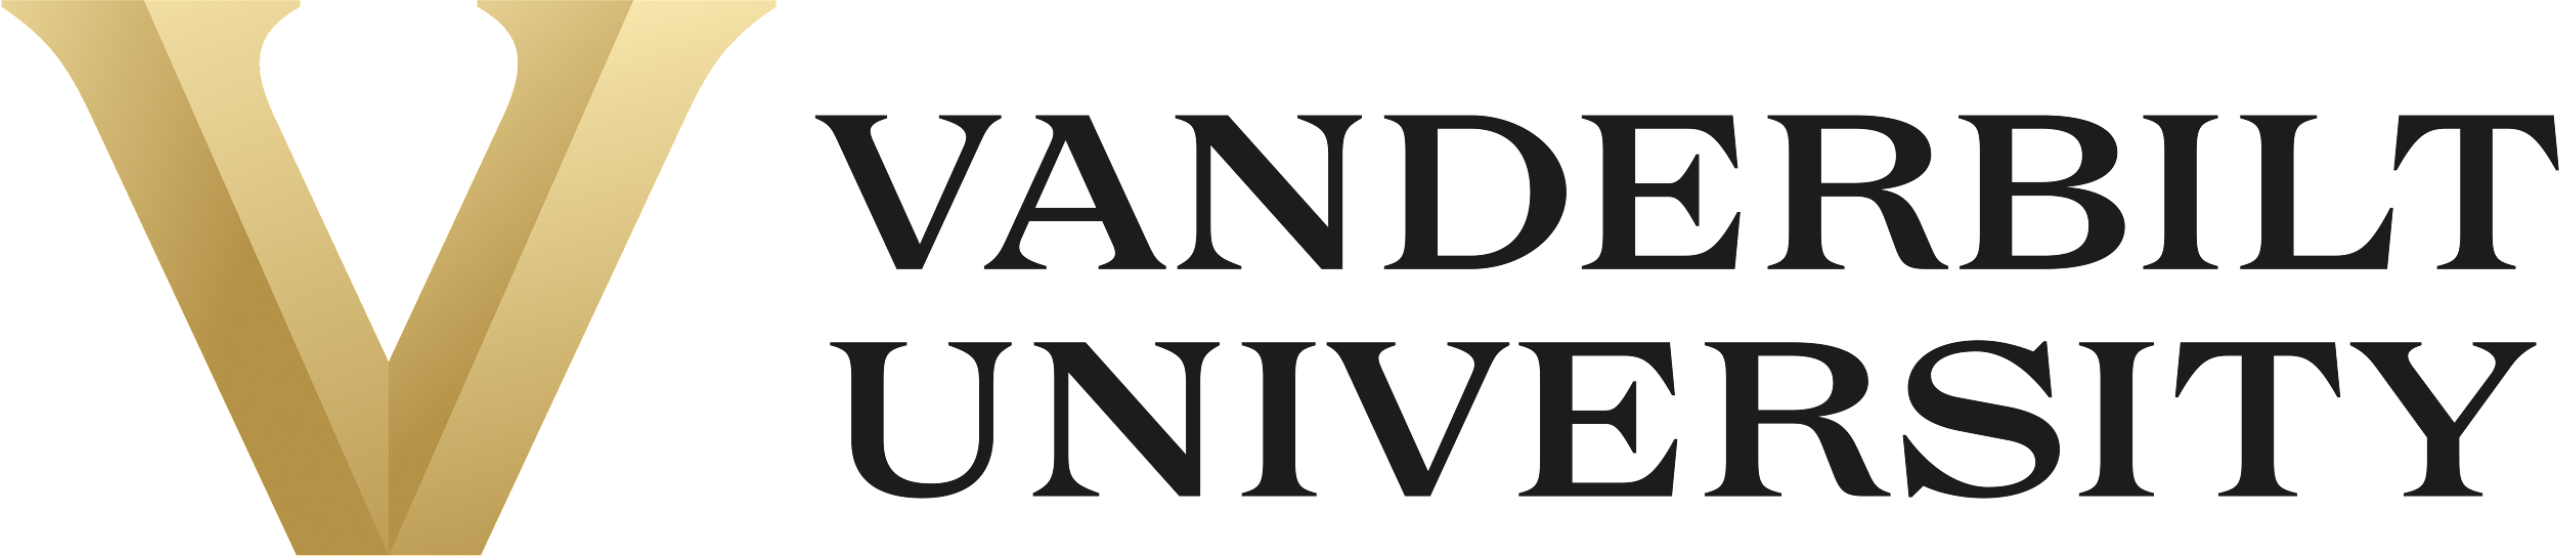 Vanderbilt_University_logo.svg